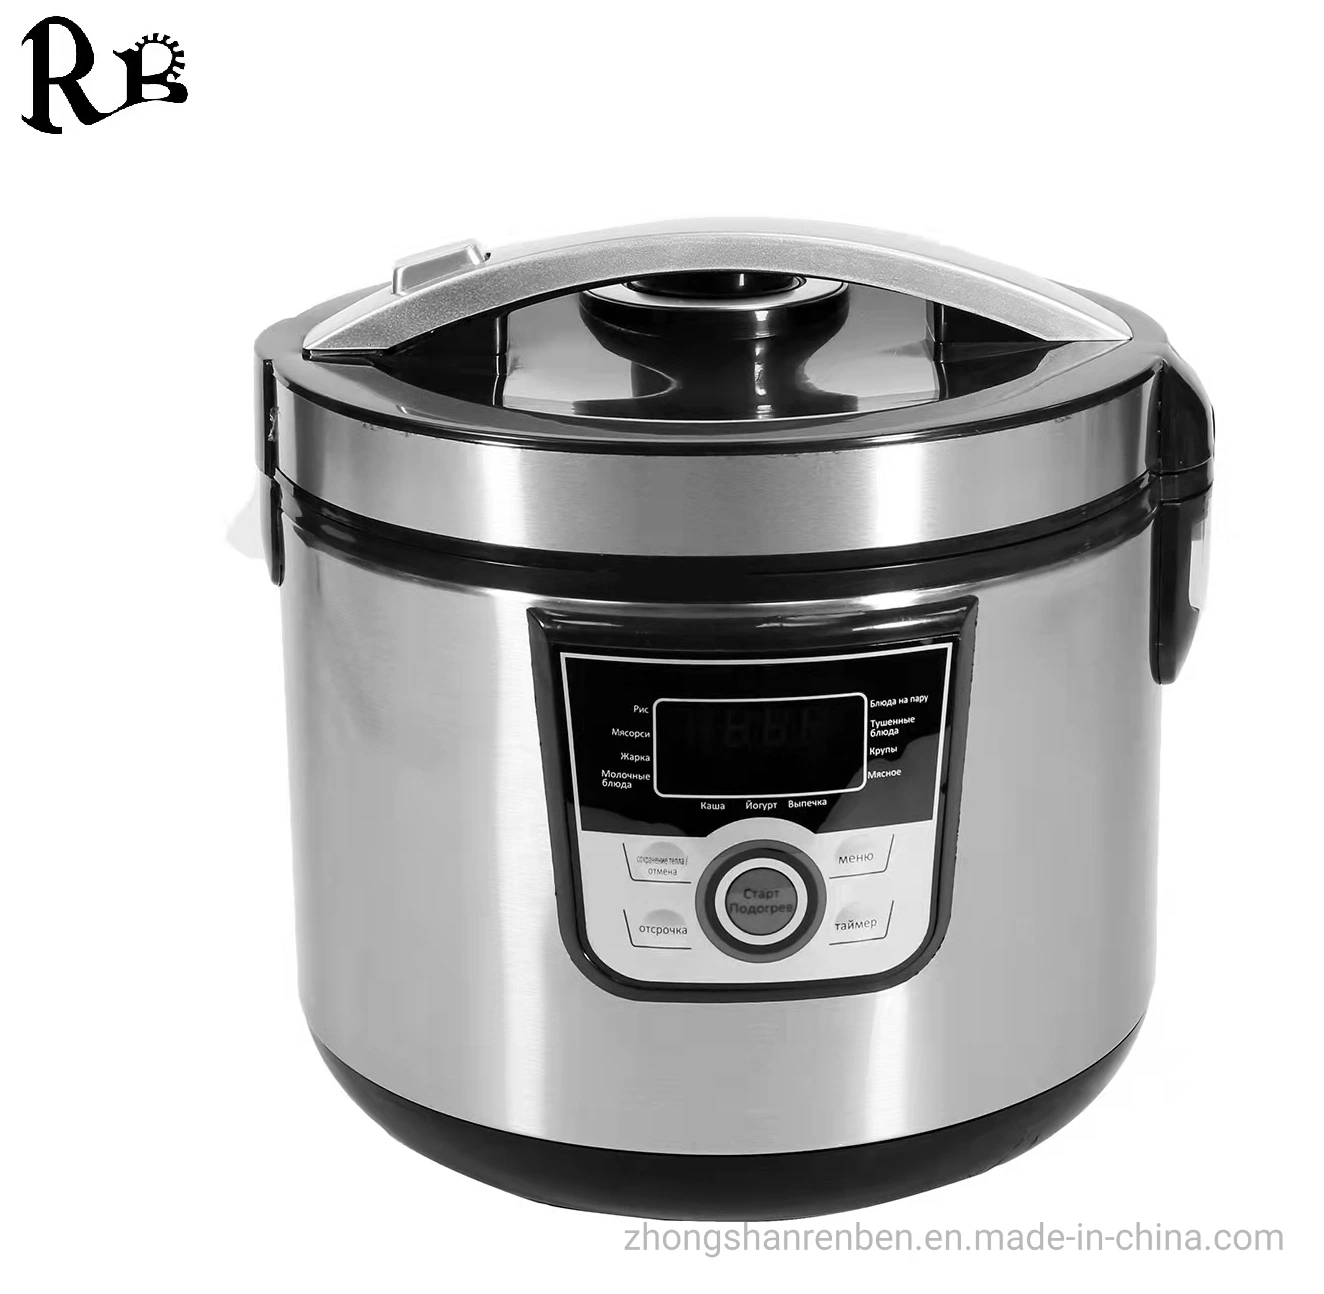 5L riz électrique multifonction cuisine domestique appareil domestique meilleur aluminium Matériau de la cuve pour cuiseur à riz pour usage domestique et commercial